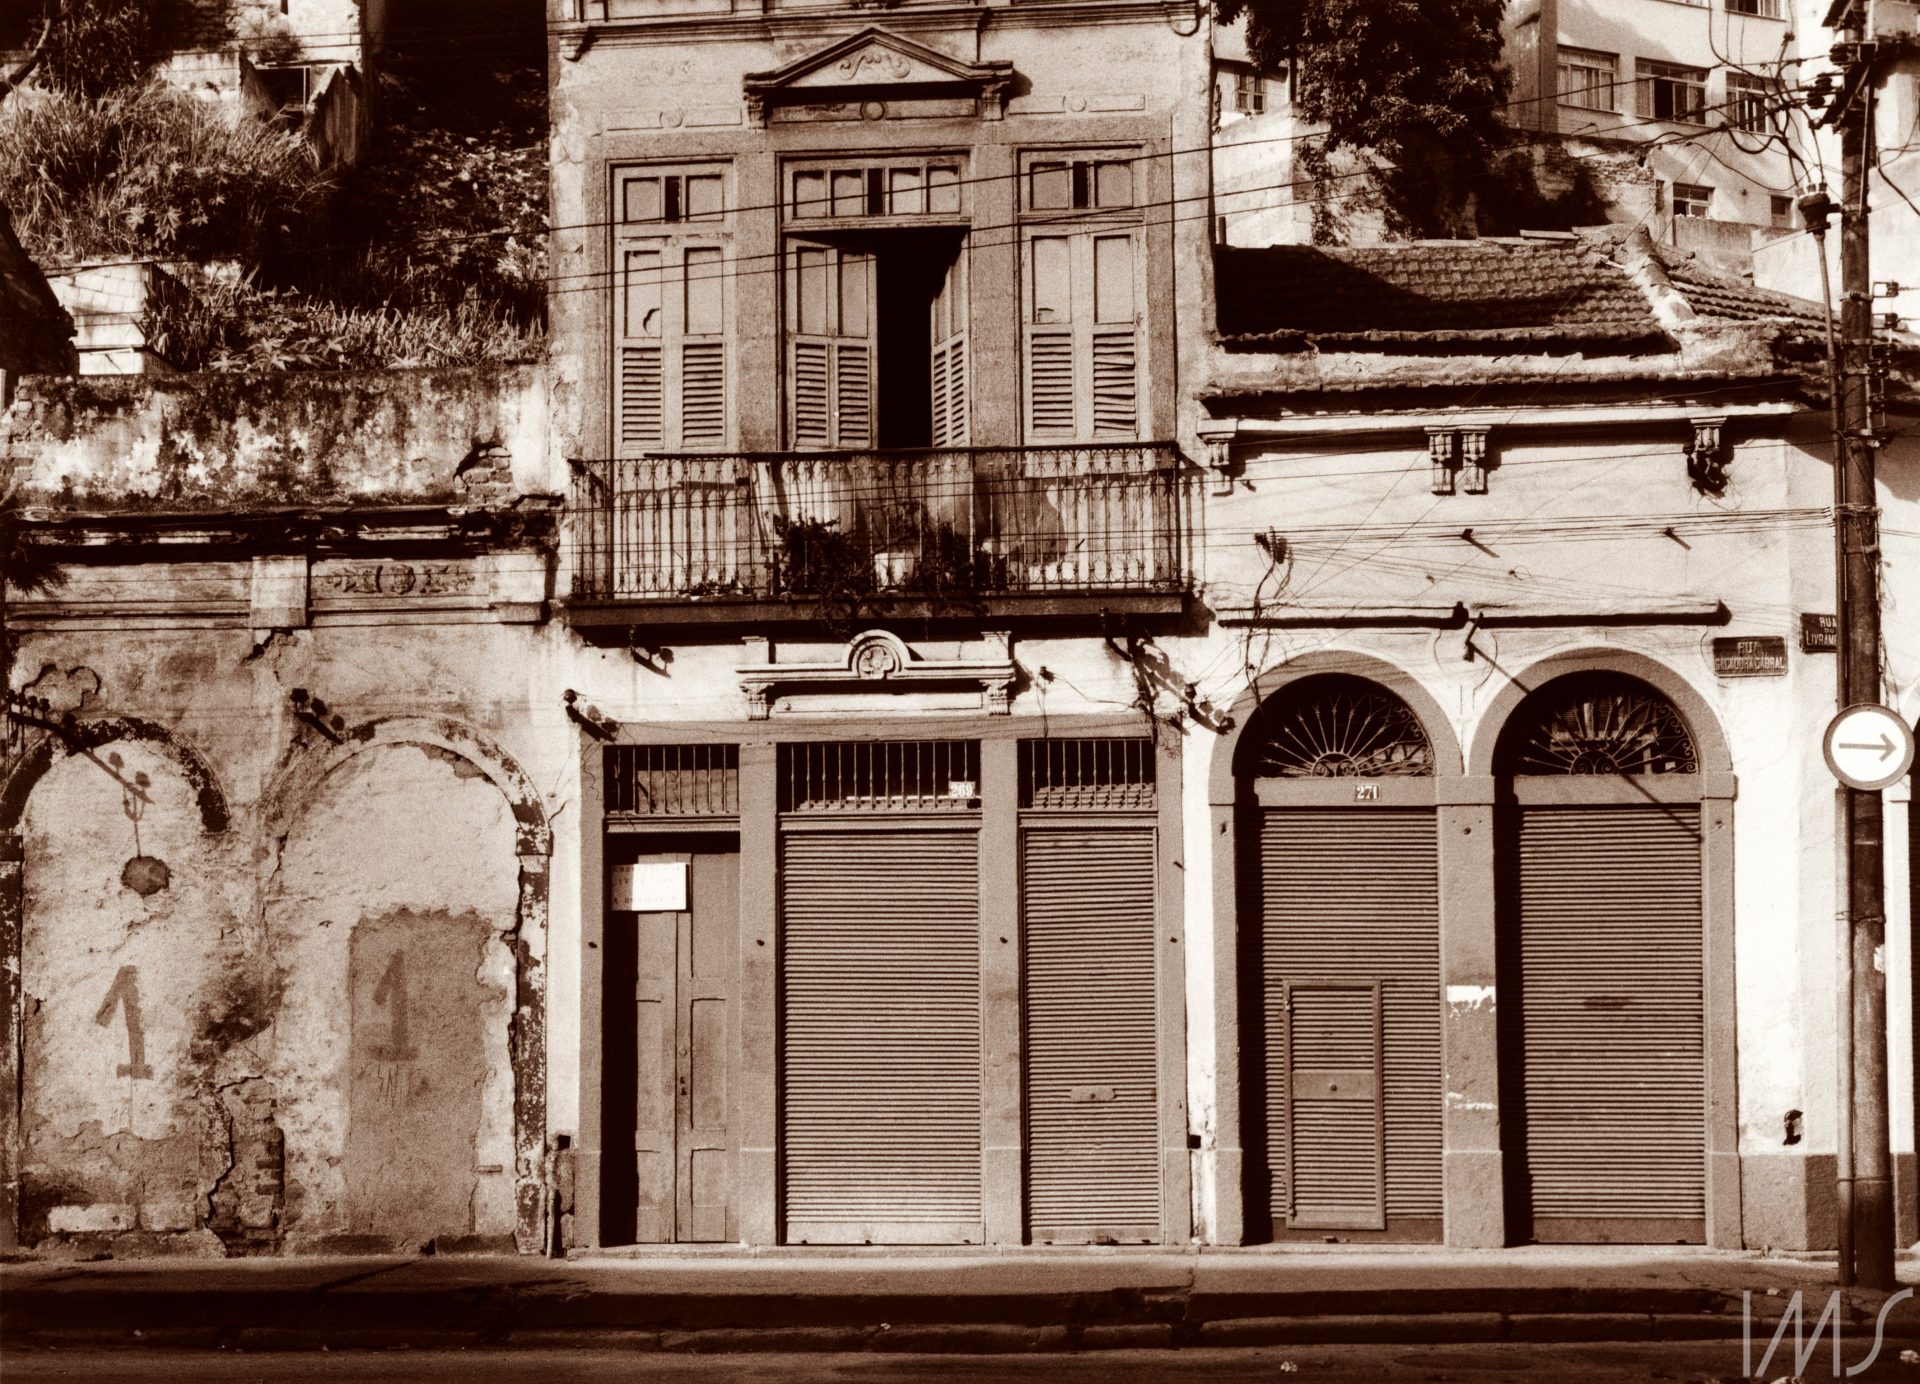 Casario da rua Sacadura Cabral. Rio de Janeiro, 1986 (Rossini Perez/Acervo IMS)